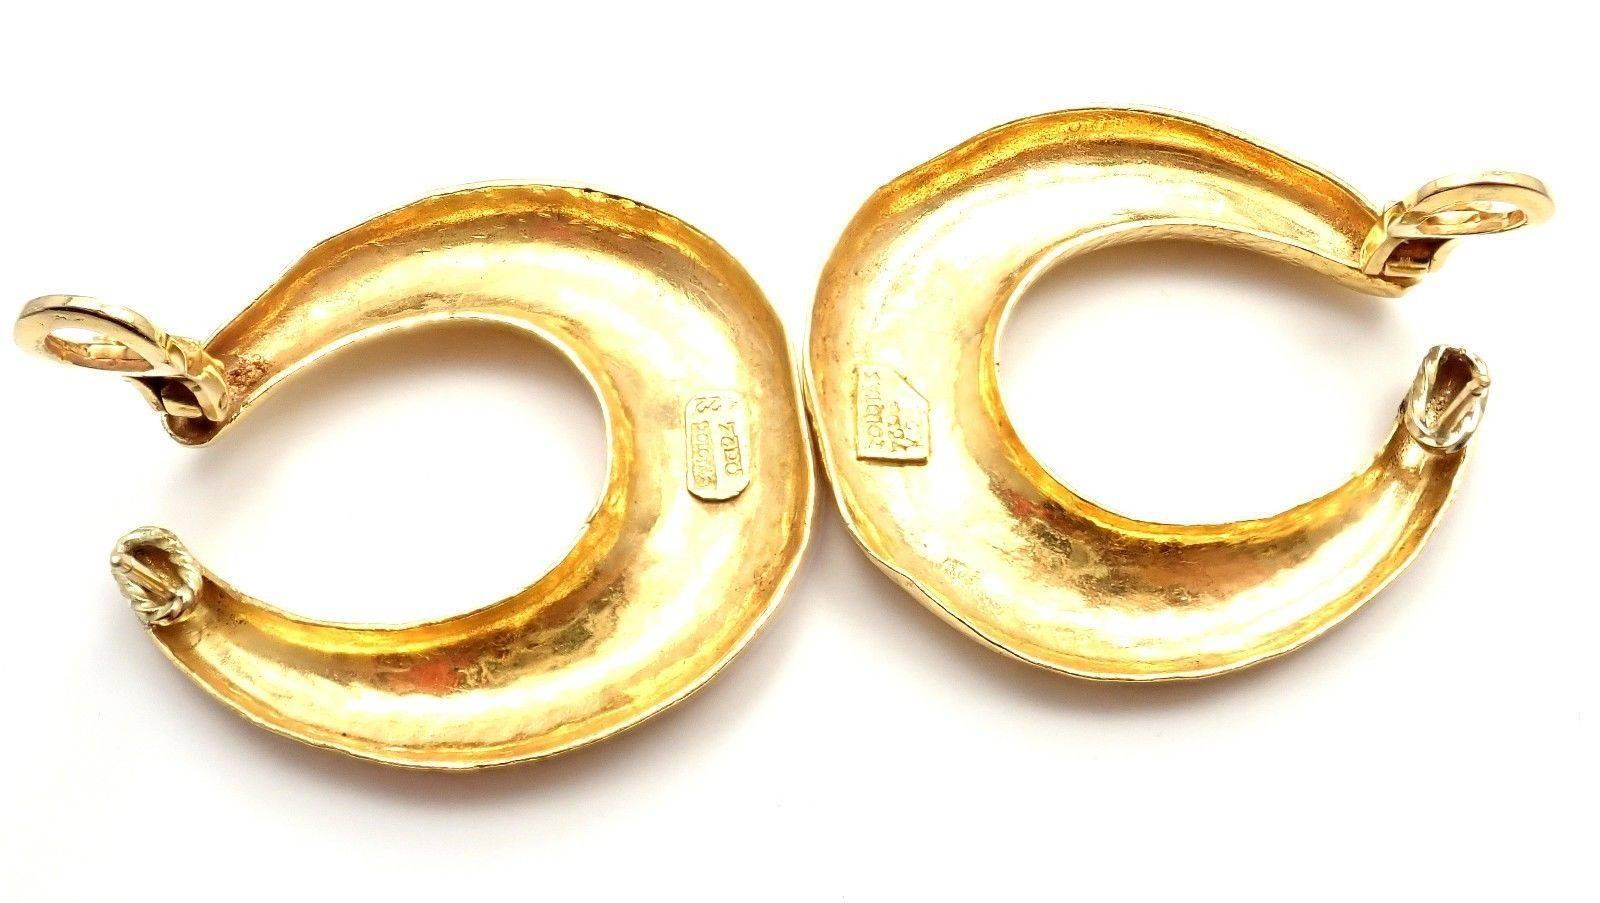 Zolotas Greece Large Yellow Gold Hoop Earrings 2